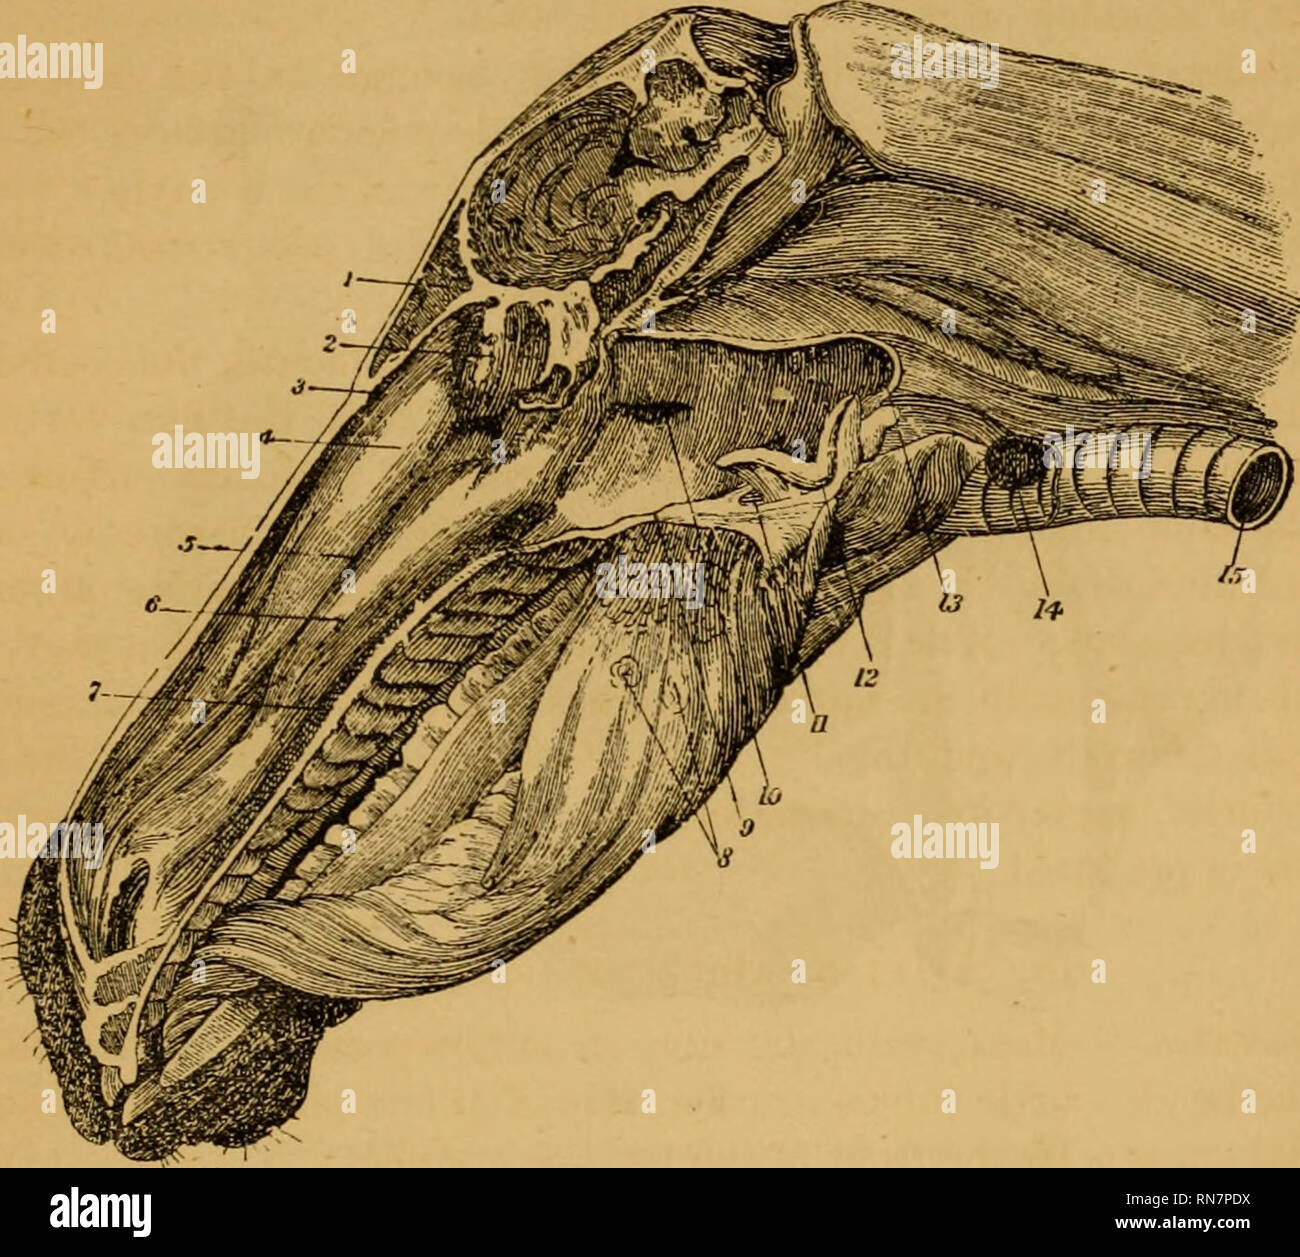 . L'anatomie du cheval ; un guide de dissection. Les chevaux. OP de DISSECTION DE LA TÊTE ET DU COU. (217) turbinated ethmoidal antérieure de l'os et le toit de la cavité (l'os nasal) ; le milieu du méat est un autre et plus grand intervalle entre les deux os turbinated ; tandis que le x&gt;osUrior du méat, la plus grande de ces. Fig. 24. La section longitudinale de la tête, montrant les cavités de la bouche, le nez, et du pharynx (Leyh). 1. Siniis frontal ; 2. Masse latérale de l'os ethmoïde ; 3. Méat nasal antérieur de chambre ; 4. Turbinated antérieur ; Os 5. Méat moyen ; 6. Turbinated postérieure ; Os 7. Derrière moi Banque D'Images